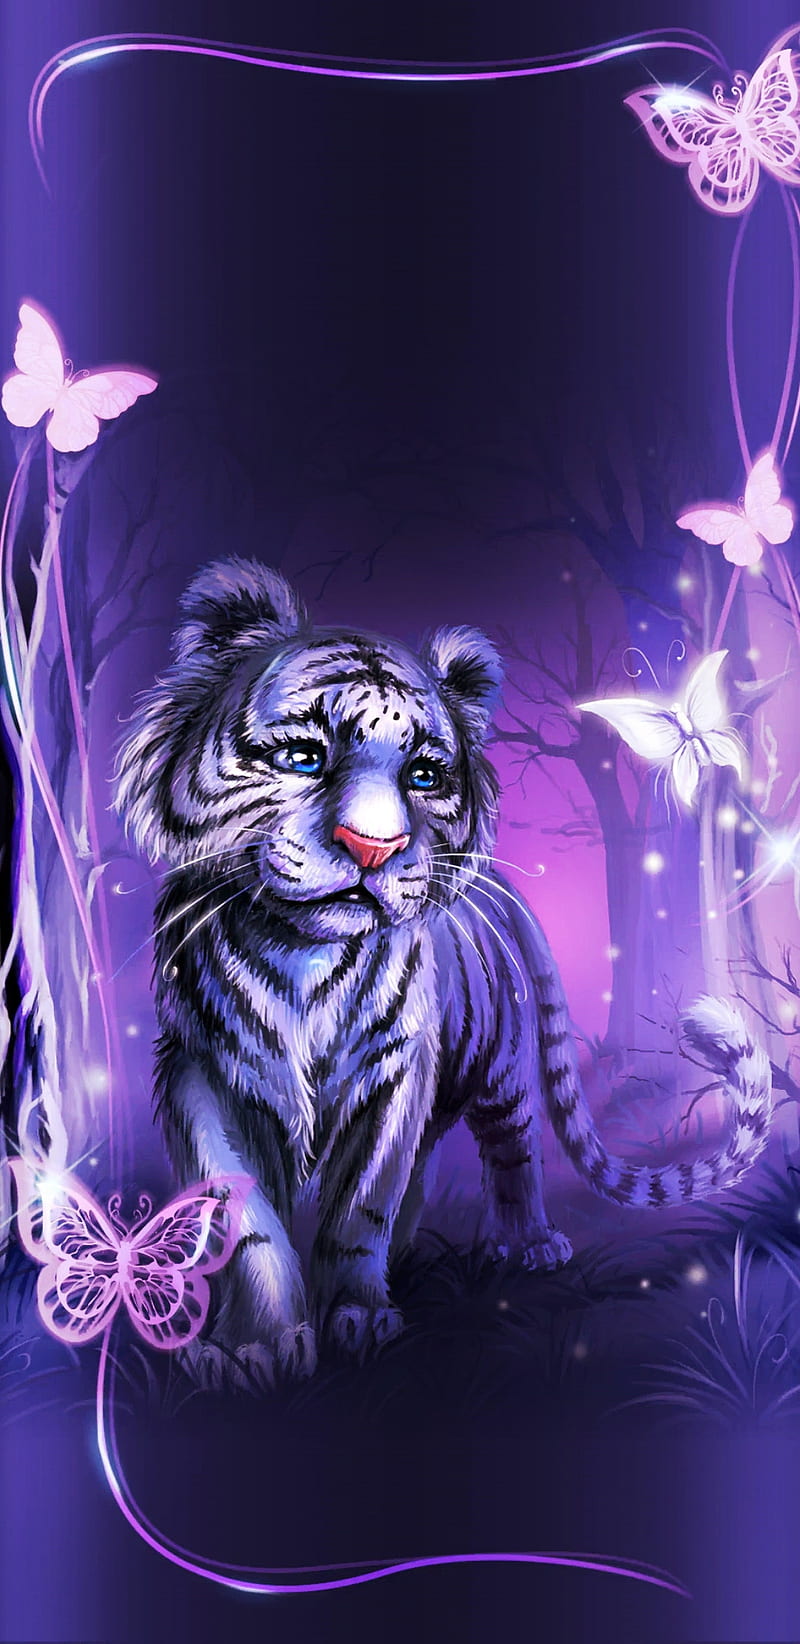 HD purple tiger wallpapers | Peakpx